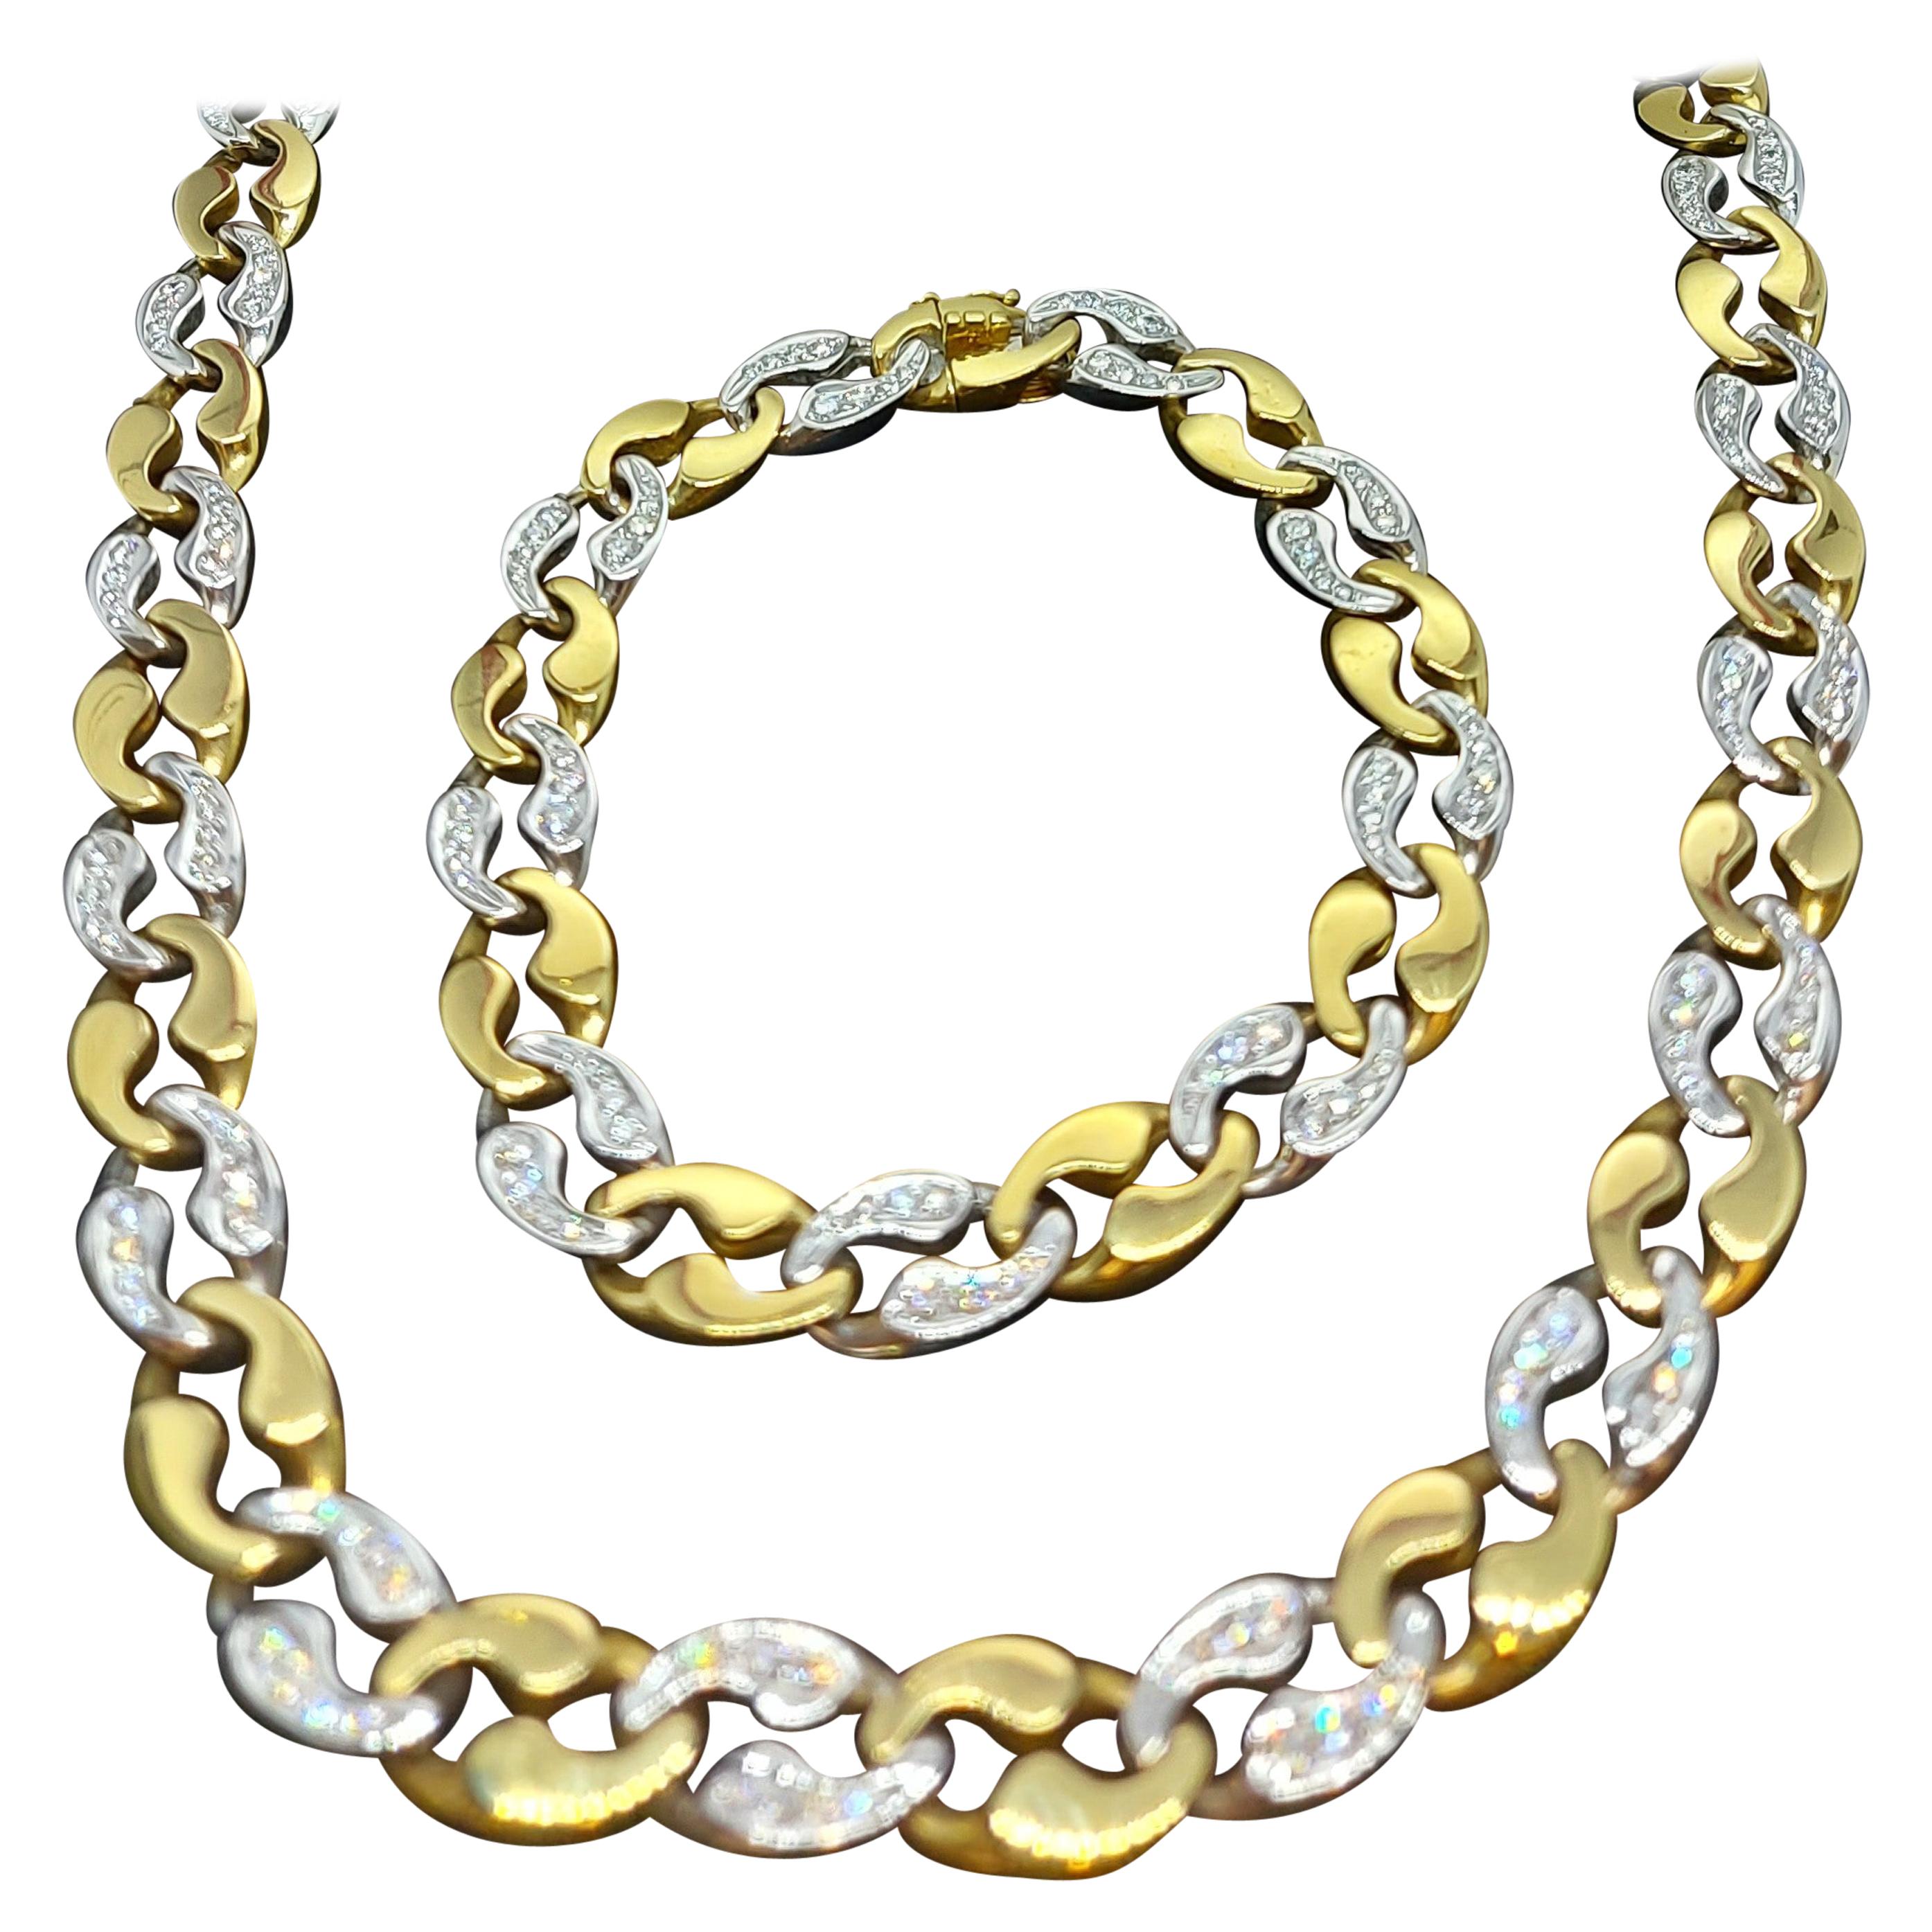 18kt Gold Link Cartier London Necklace Bracelet Brilliant Cut Diamonds Estate